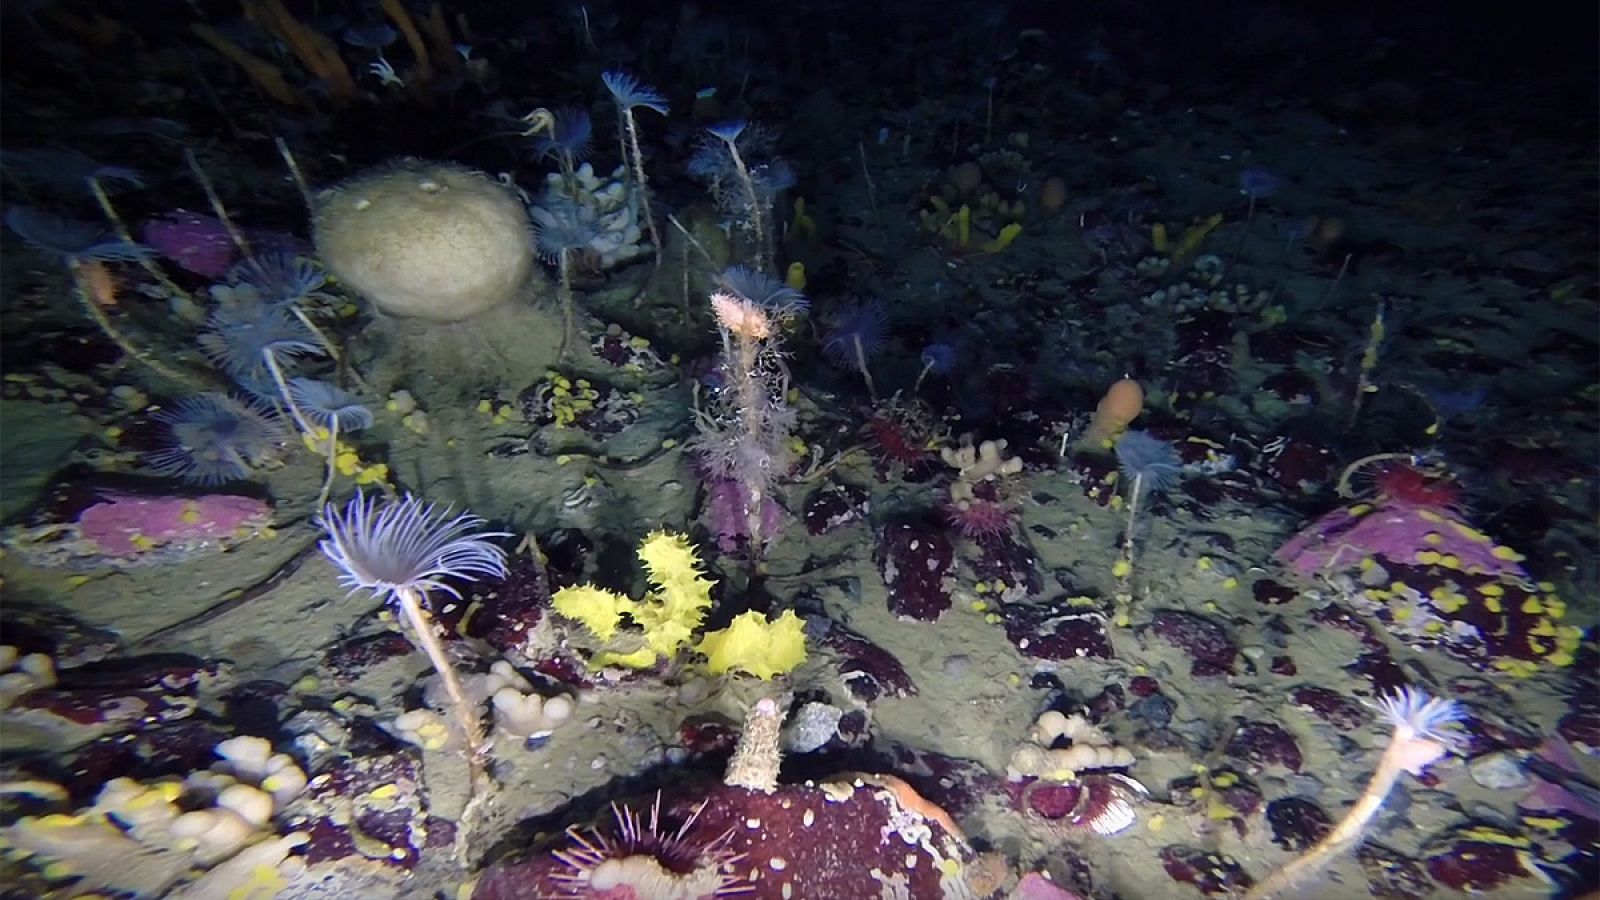 Fotograma del video que muestra la rica biodiversidad submarina de la Antártida.